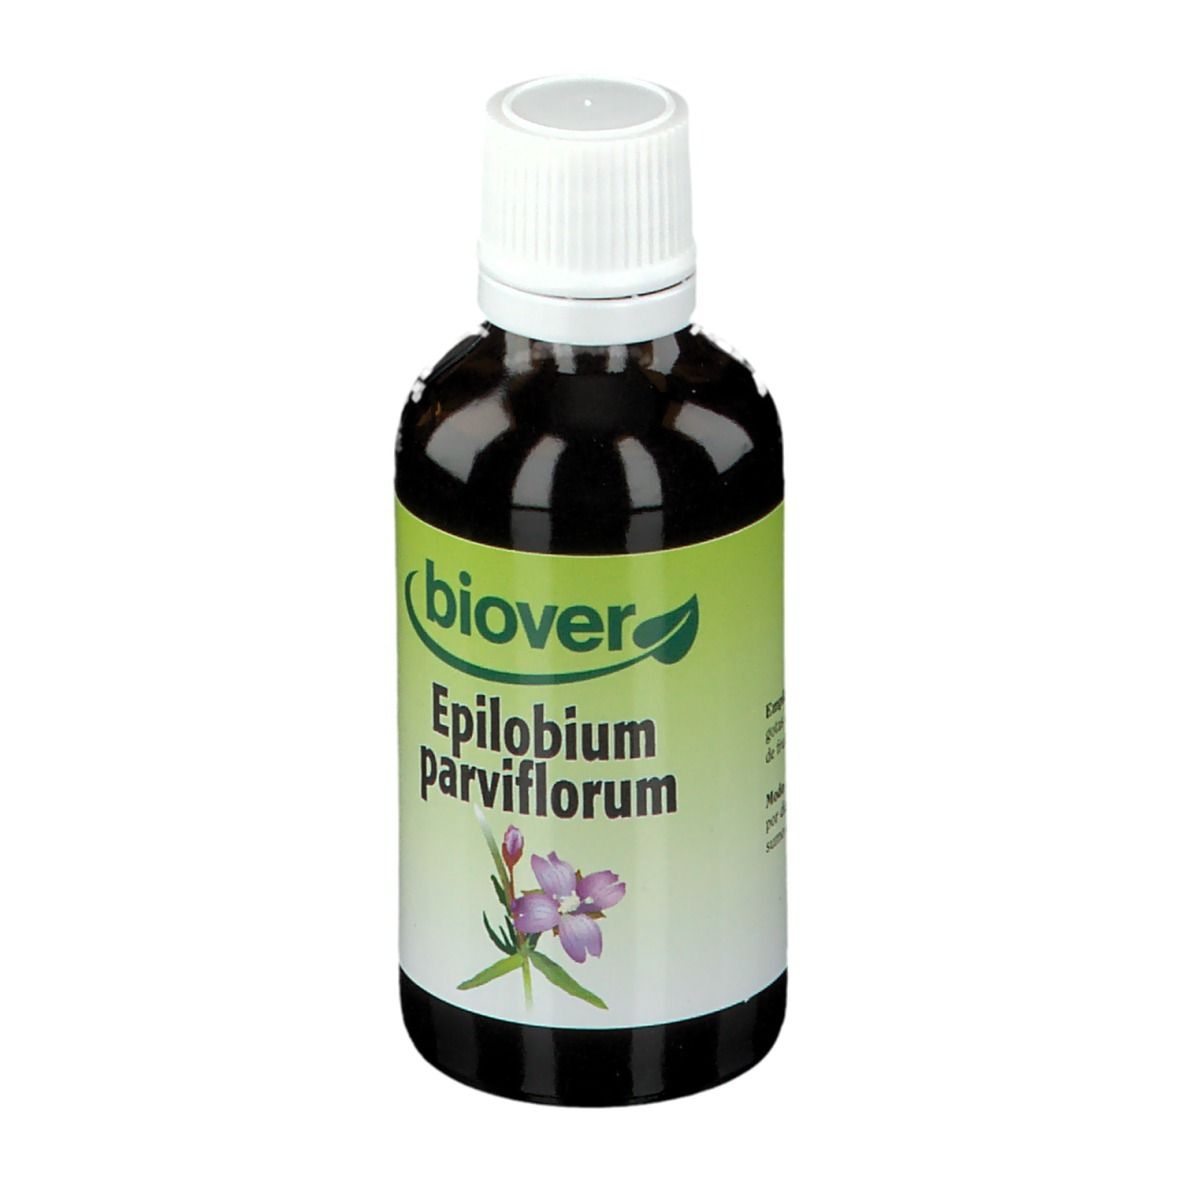 Biover Epilobium Parviflorum Weidenröschen